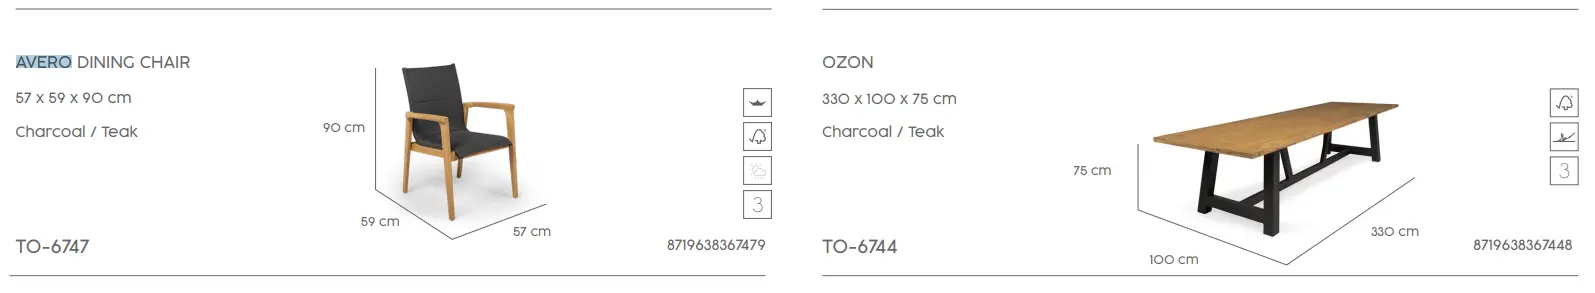 Elementy kompletu stołowego AVERO-OZON